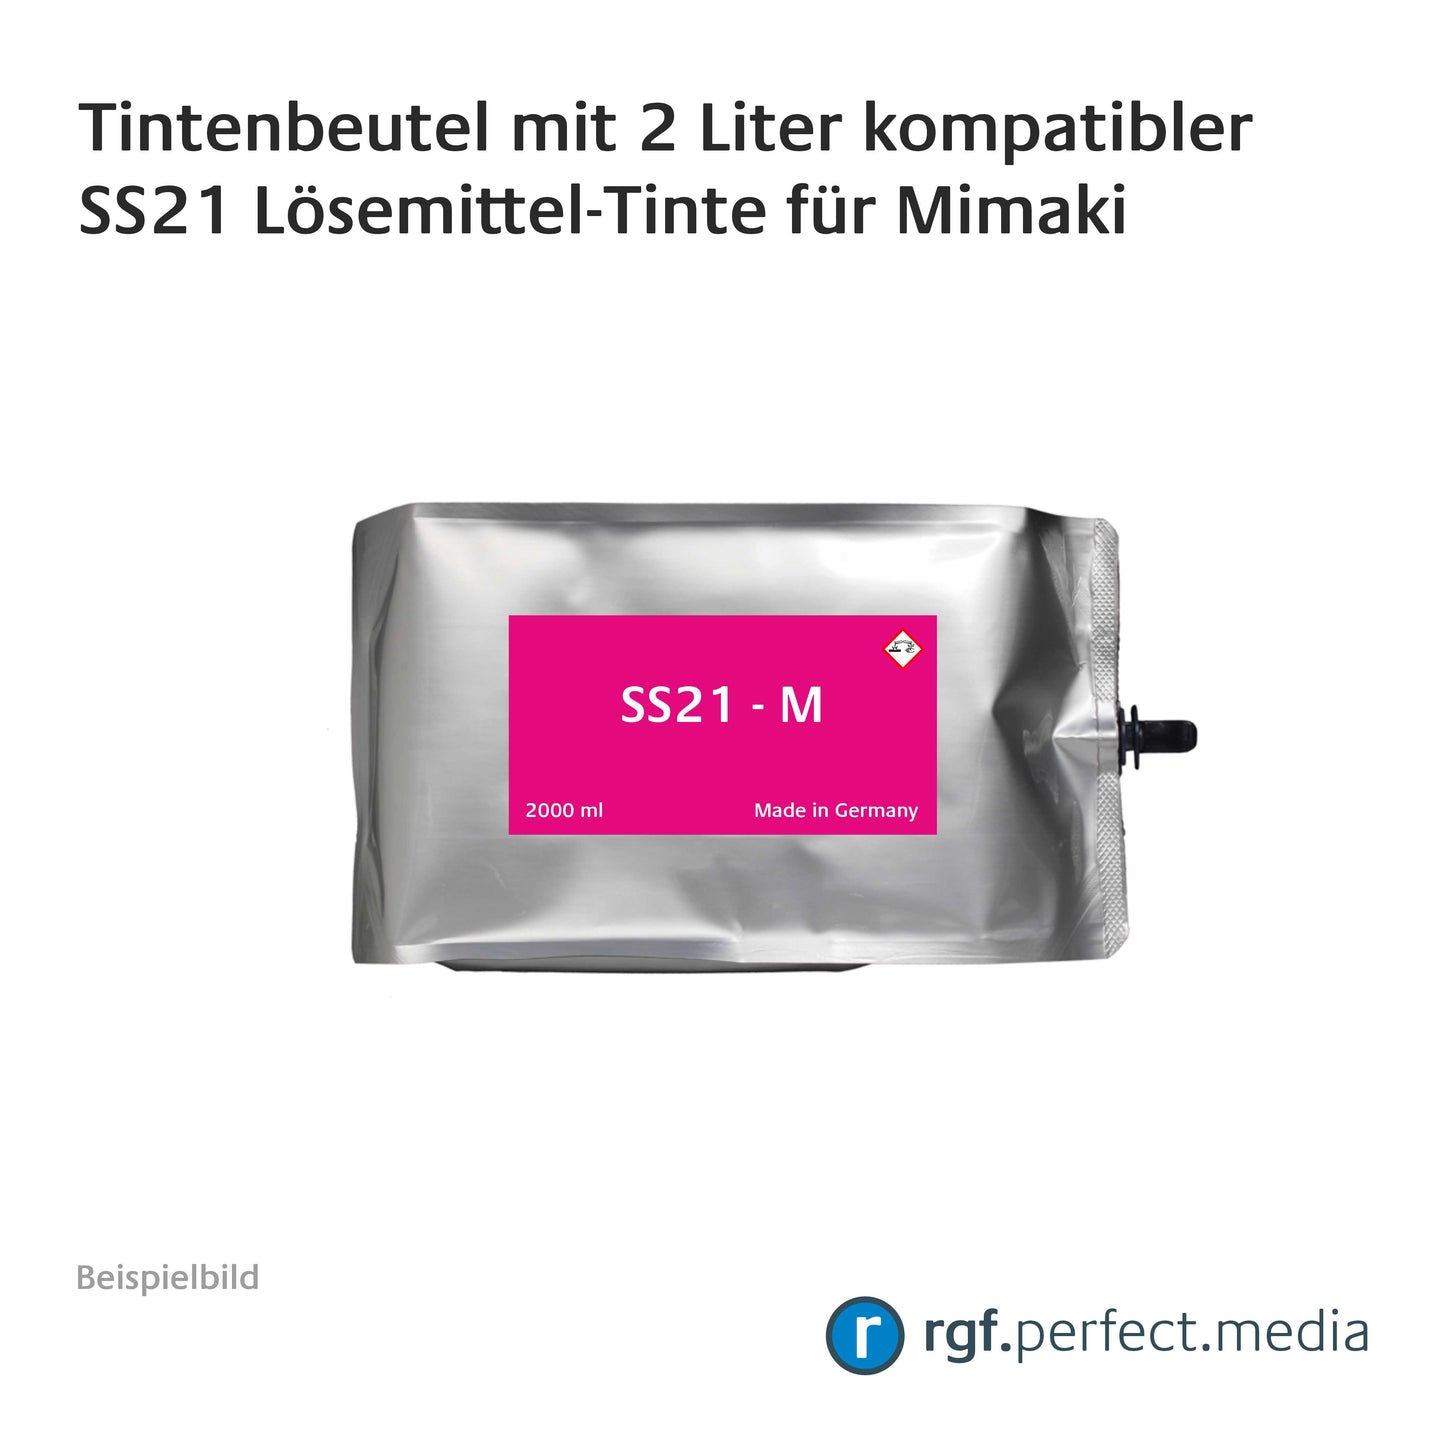 Tintenbeutel mit 2 Liter kompatibler SS21 Lösemittel-Tinte für Mimaki inklusive Chip